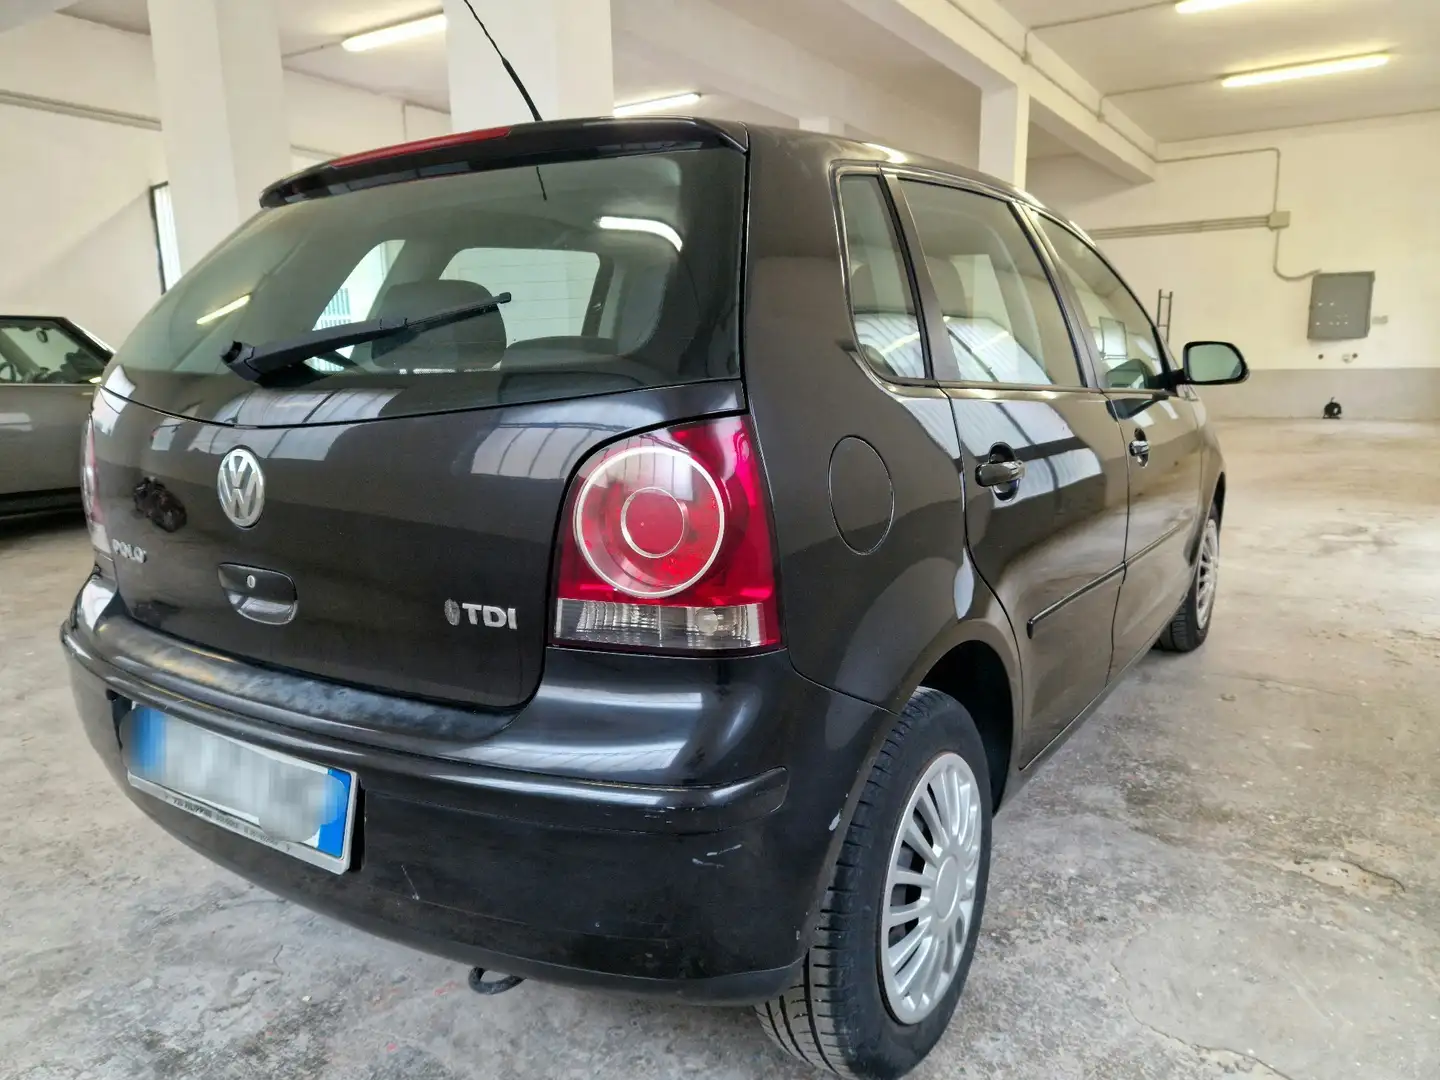 Volkswagen Polo usata a Certaldo per € 3.500,-